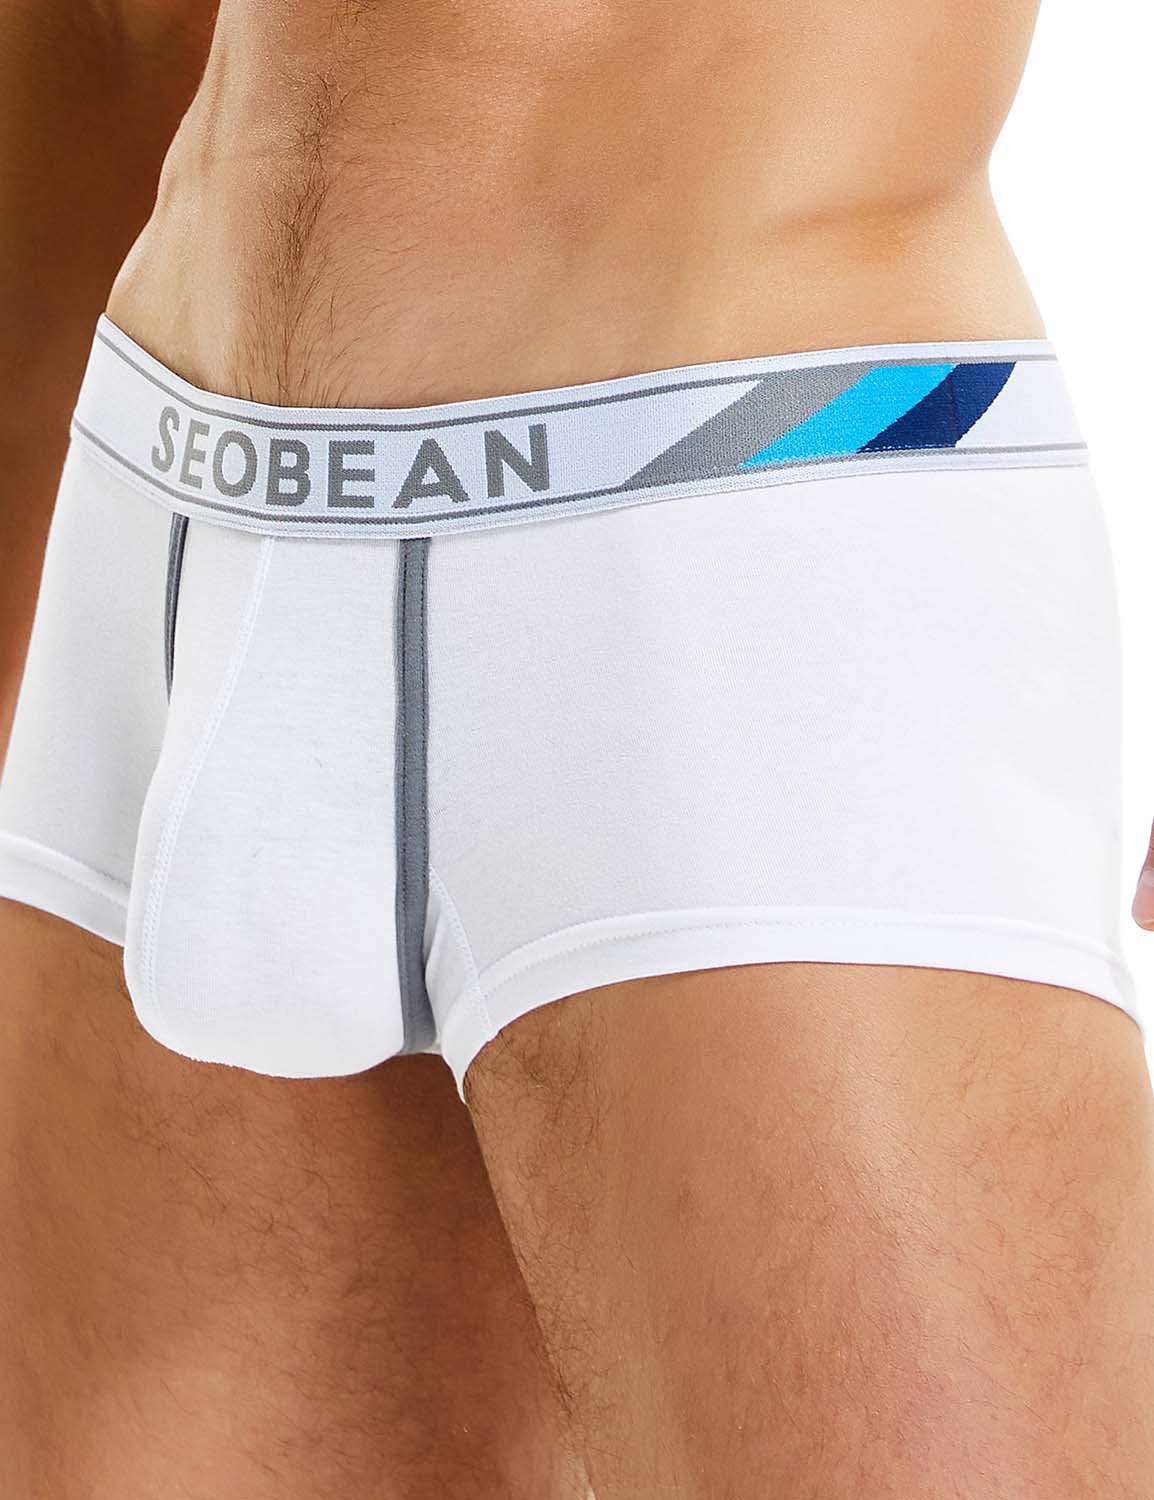 SEOBEAN Mens Low Rise Sexy Nano Trunks Boxer Briefs Underwear 10208 –  SEOBEAN®